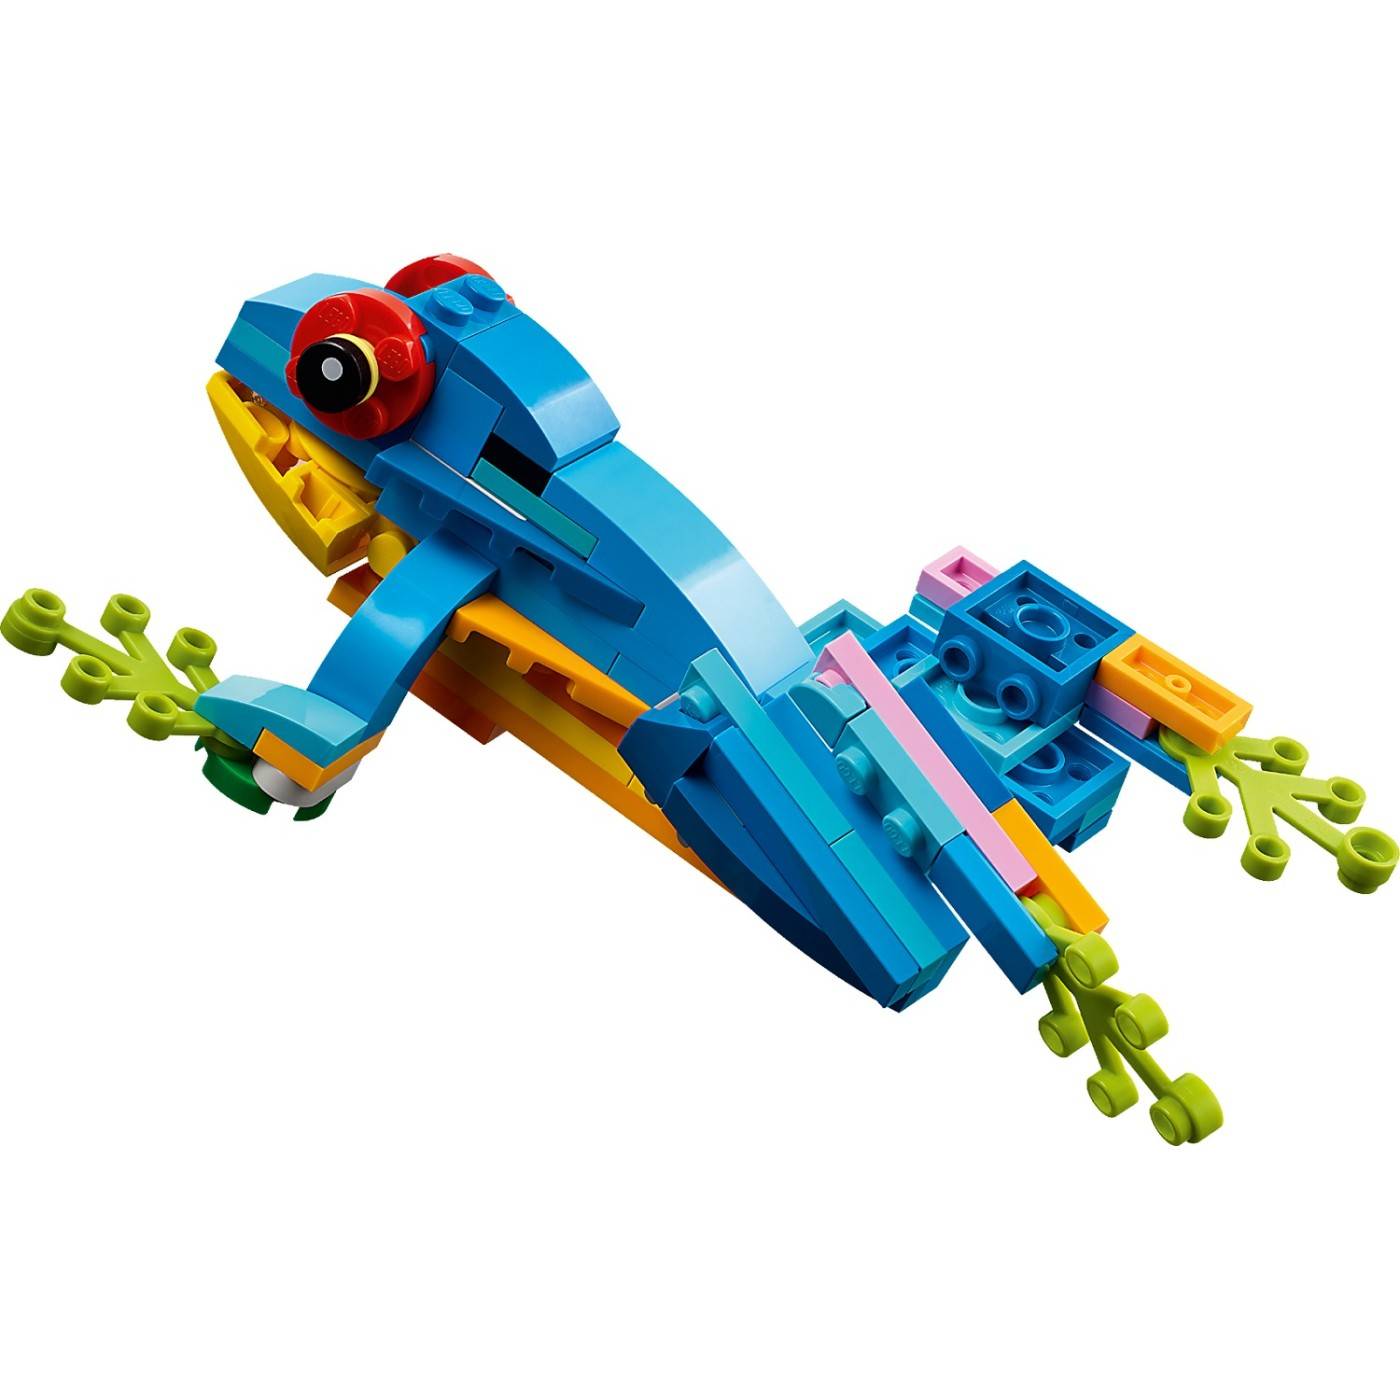 LEGO 31136 CREATOR EXOTIC PARROT